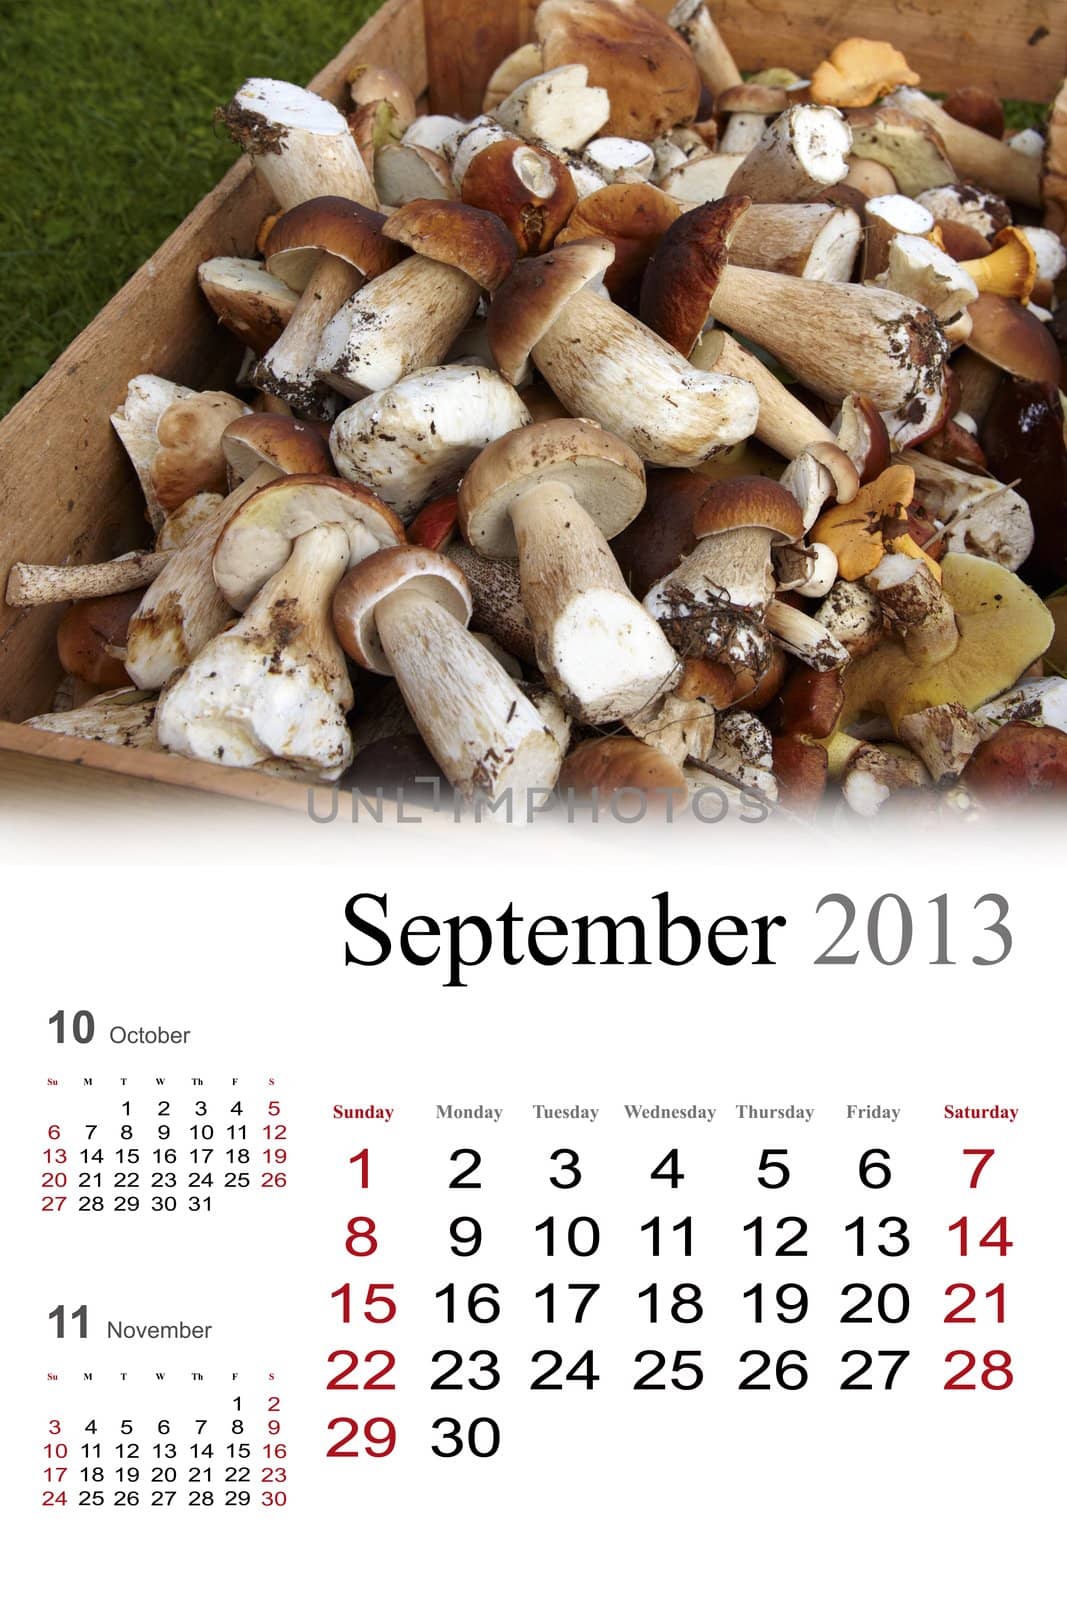 2013 Calendar. September. Golden autumn colors